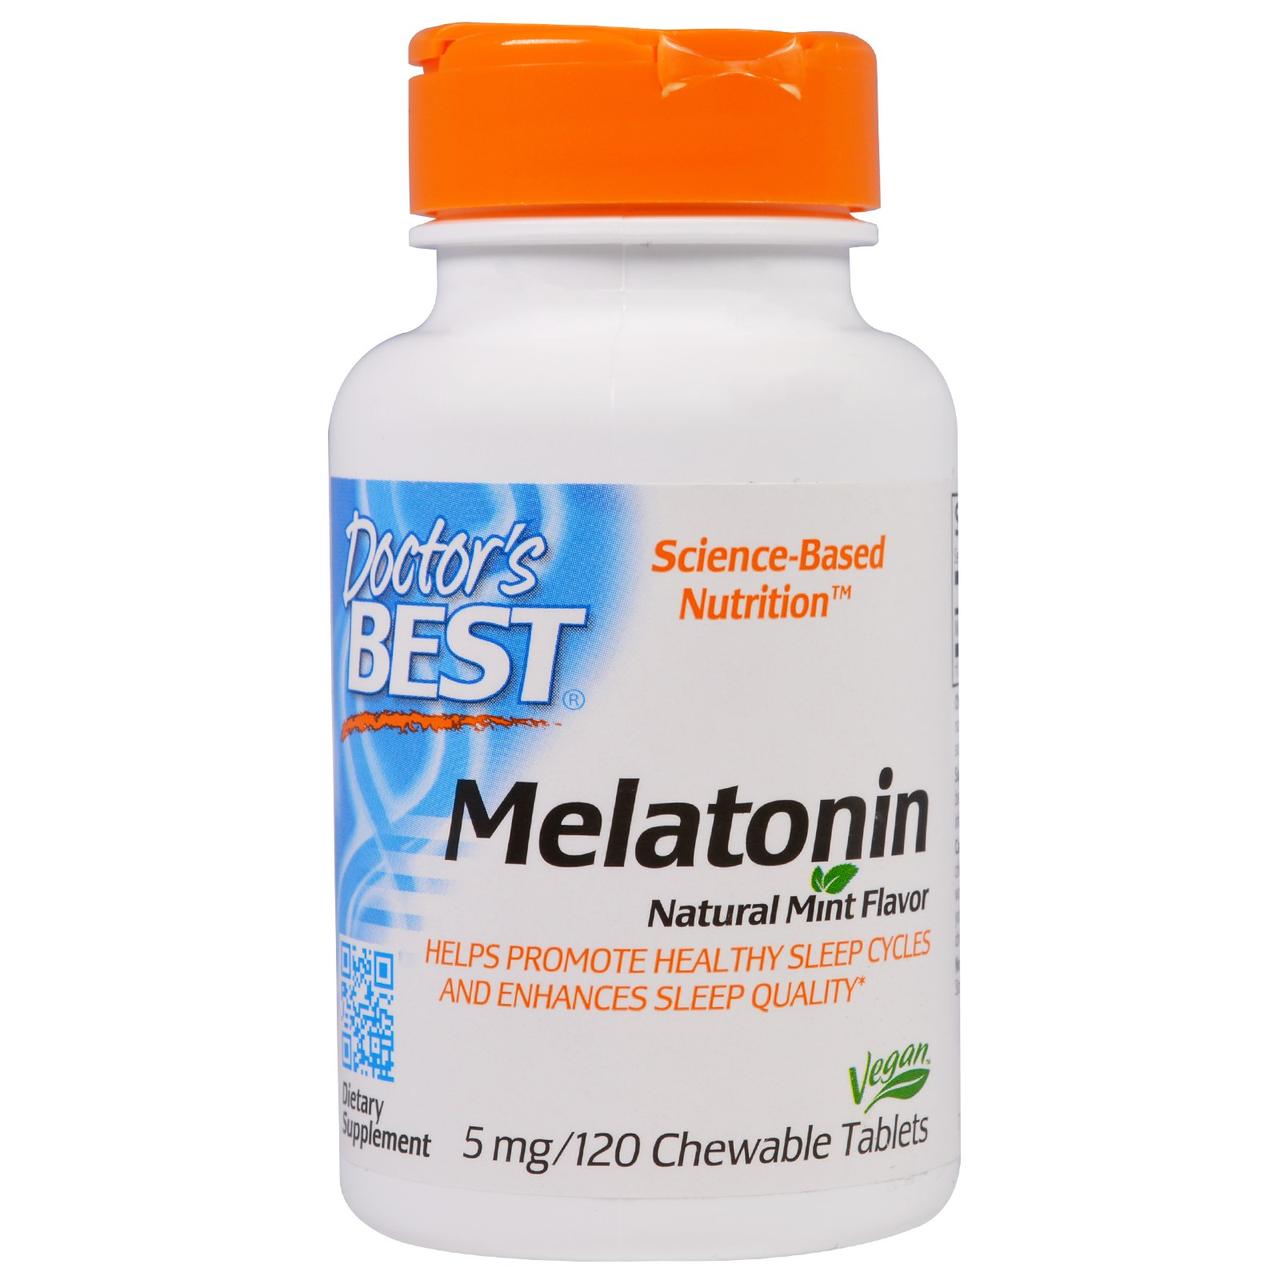 Doctor's BEST Мелатонин 5мг, Мятный вкус, Doctor's Best, 120 жевательных таблеток, , 120 